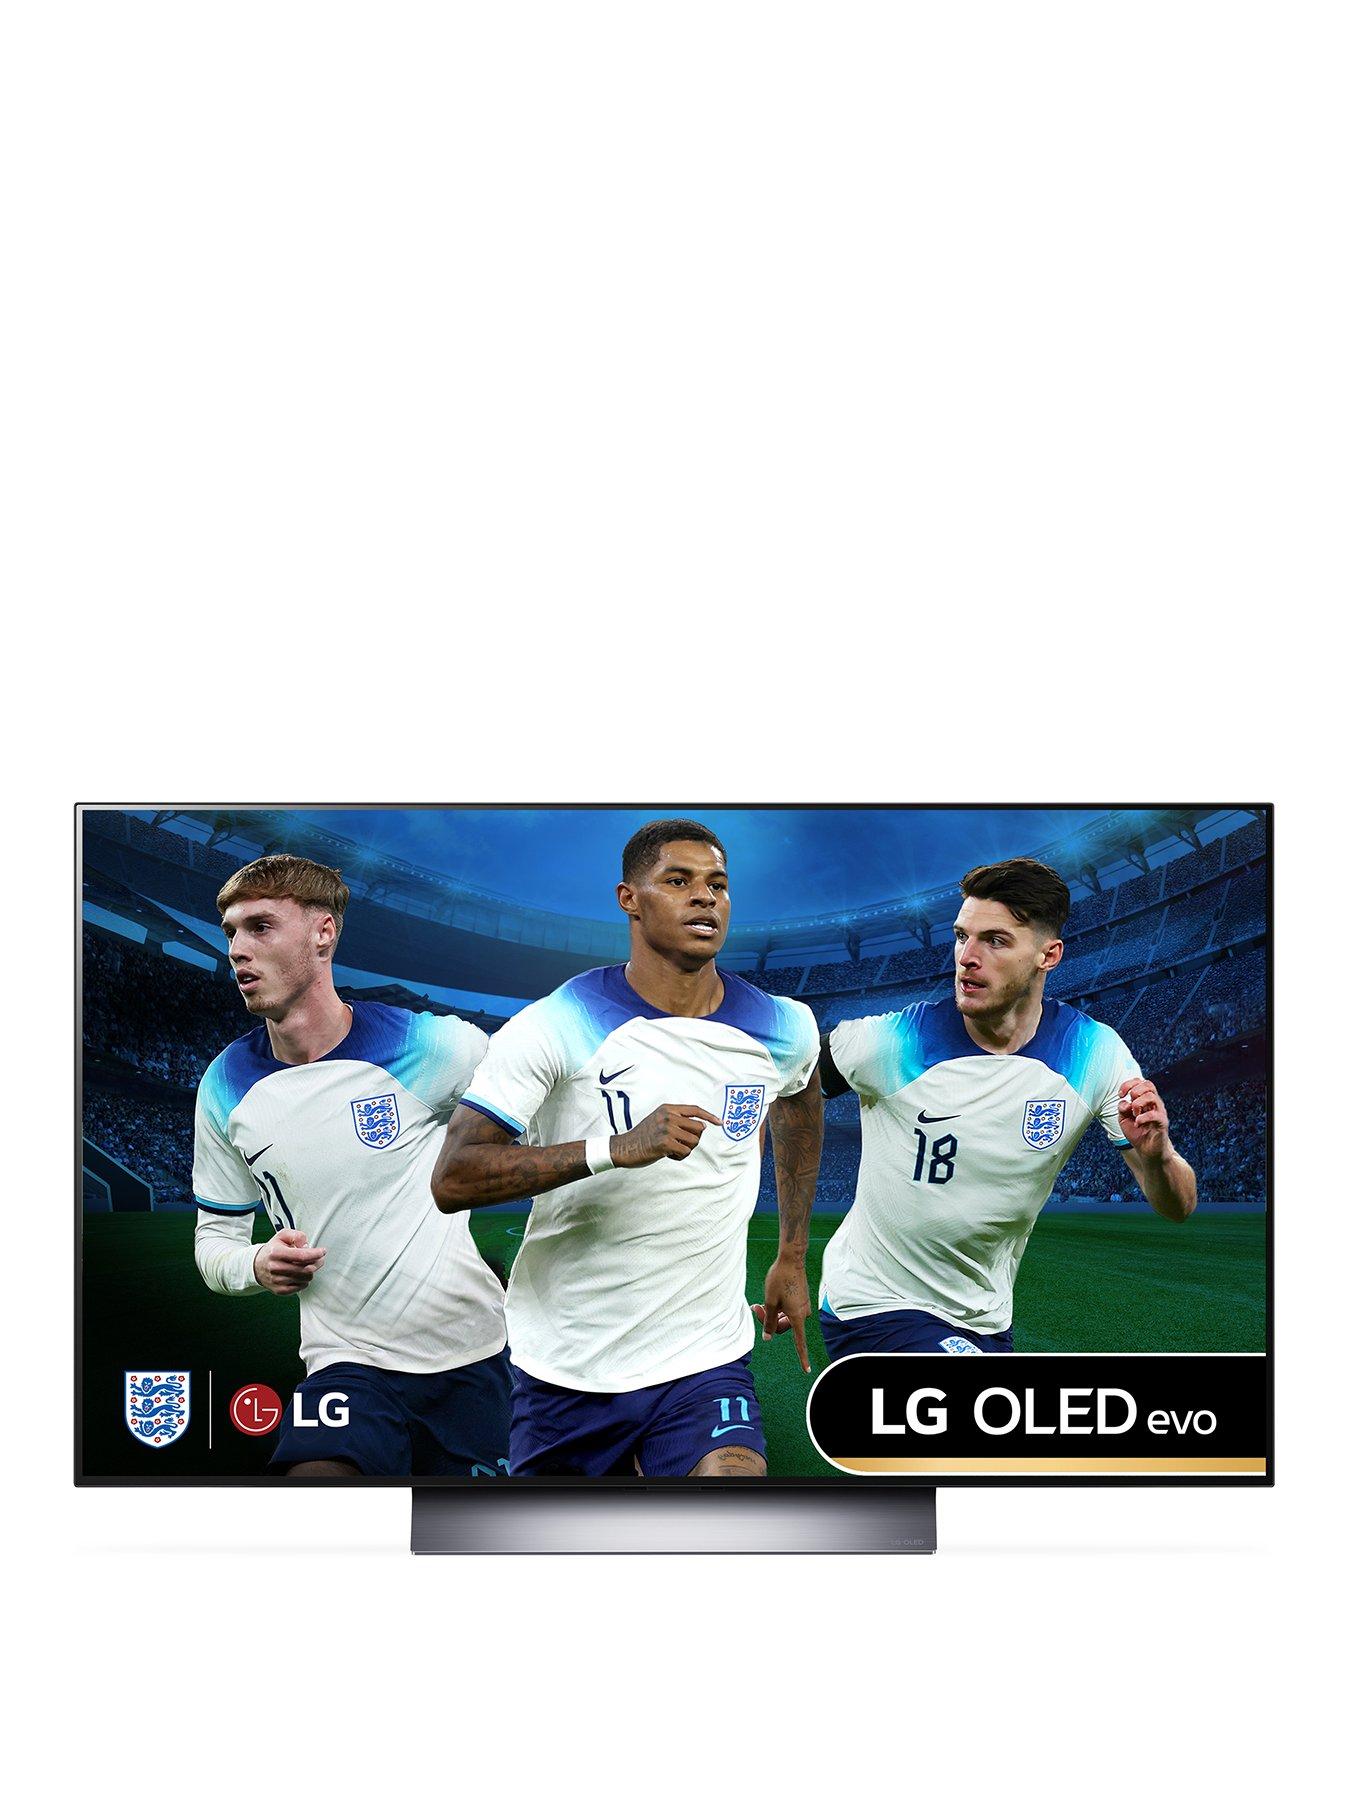 LG OLED evo C3 48 4K Smart TV 2023